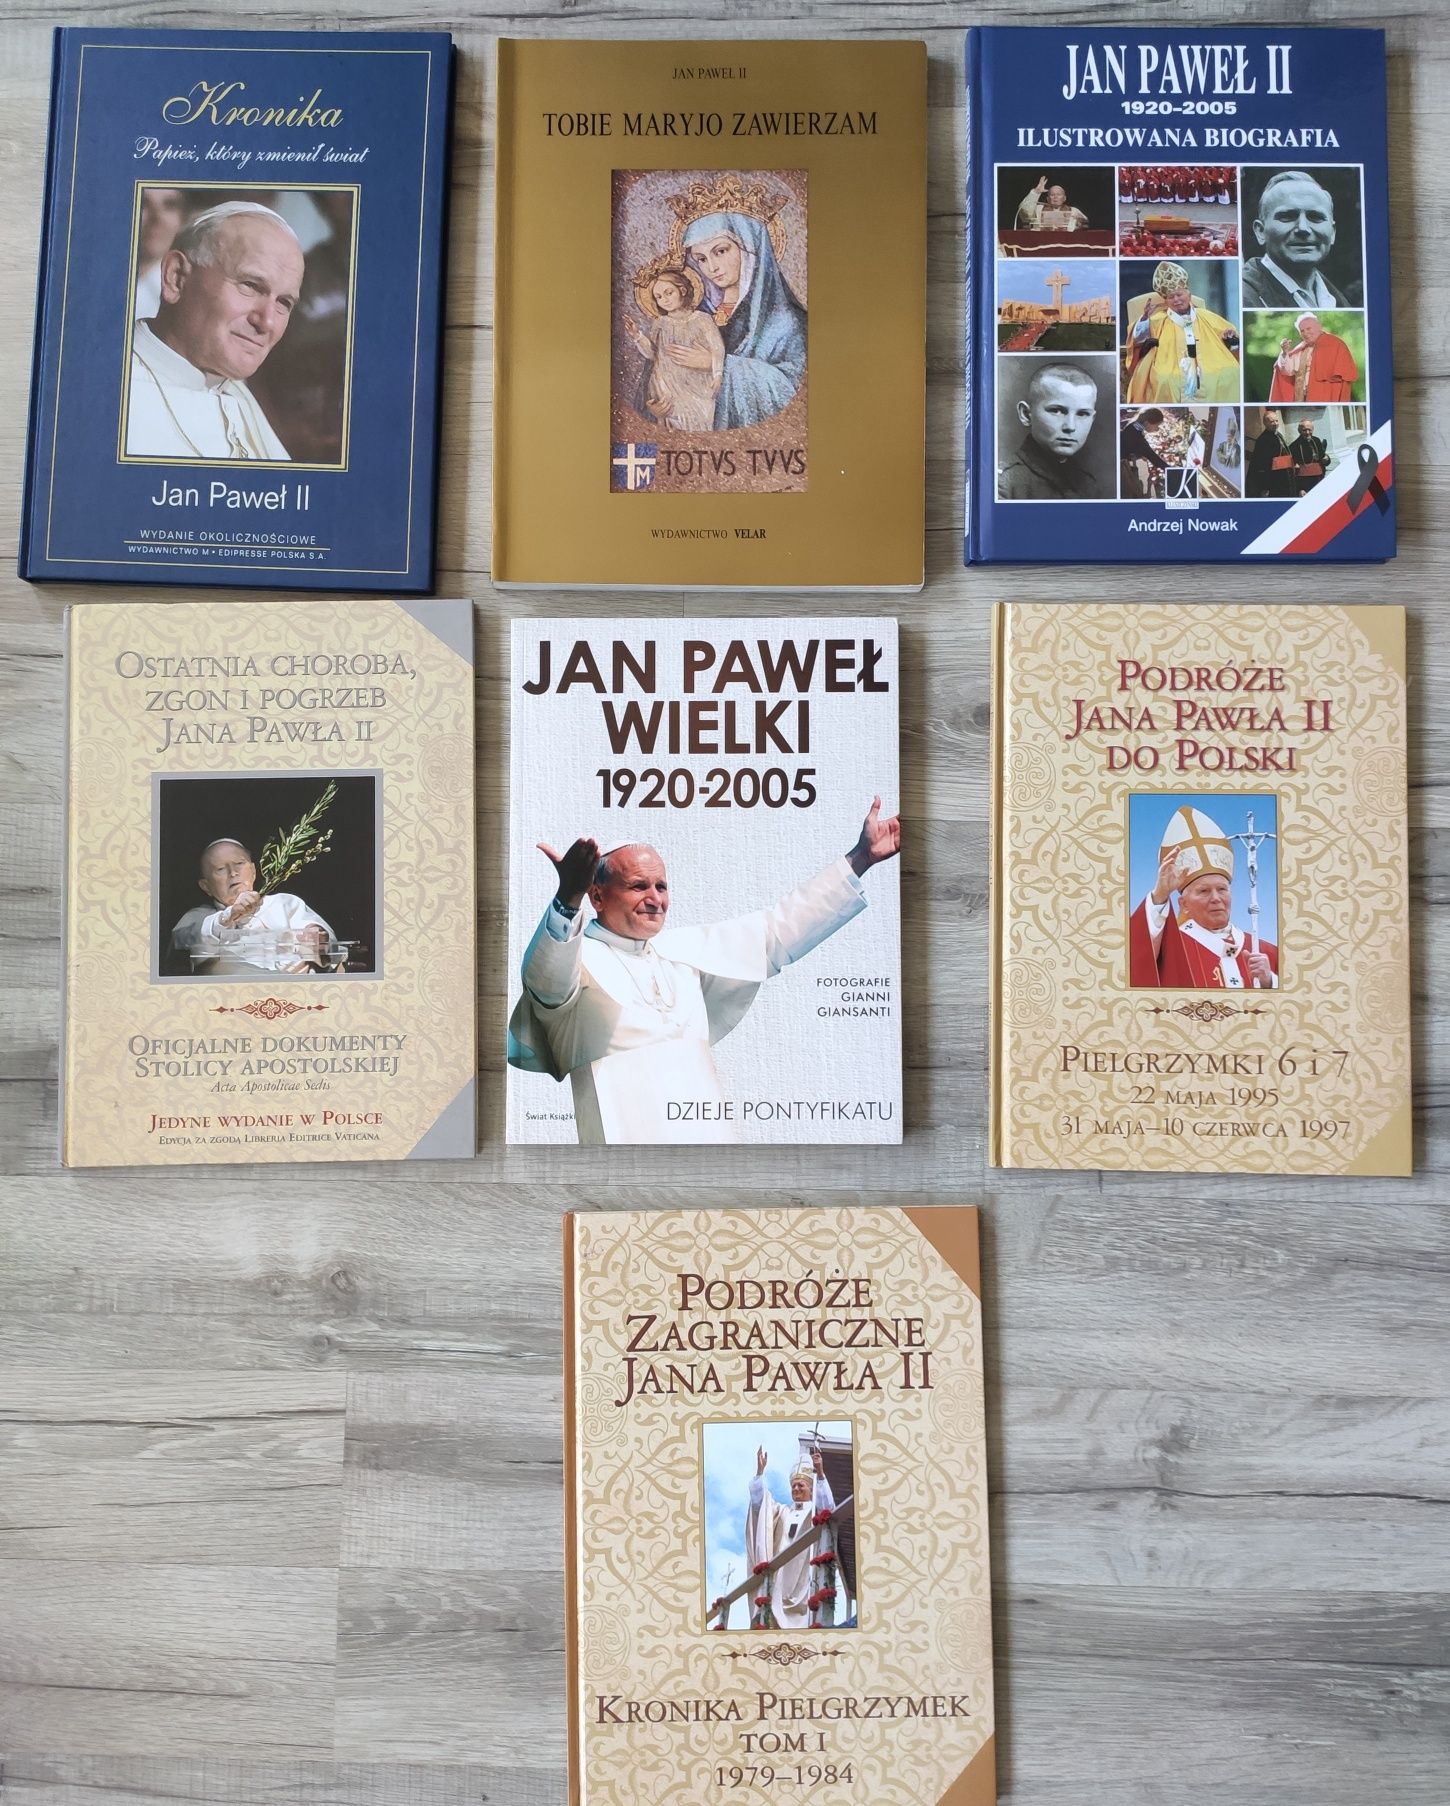 Podróże Jana Pawła II do Polski Pielgrzymka 6 i 7